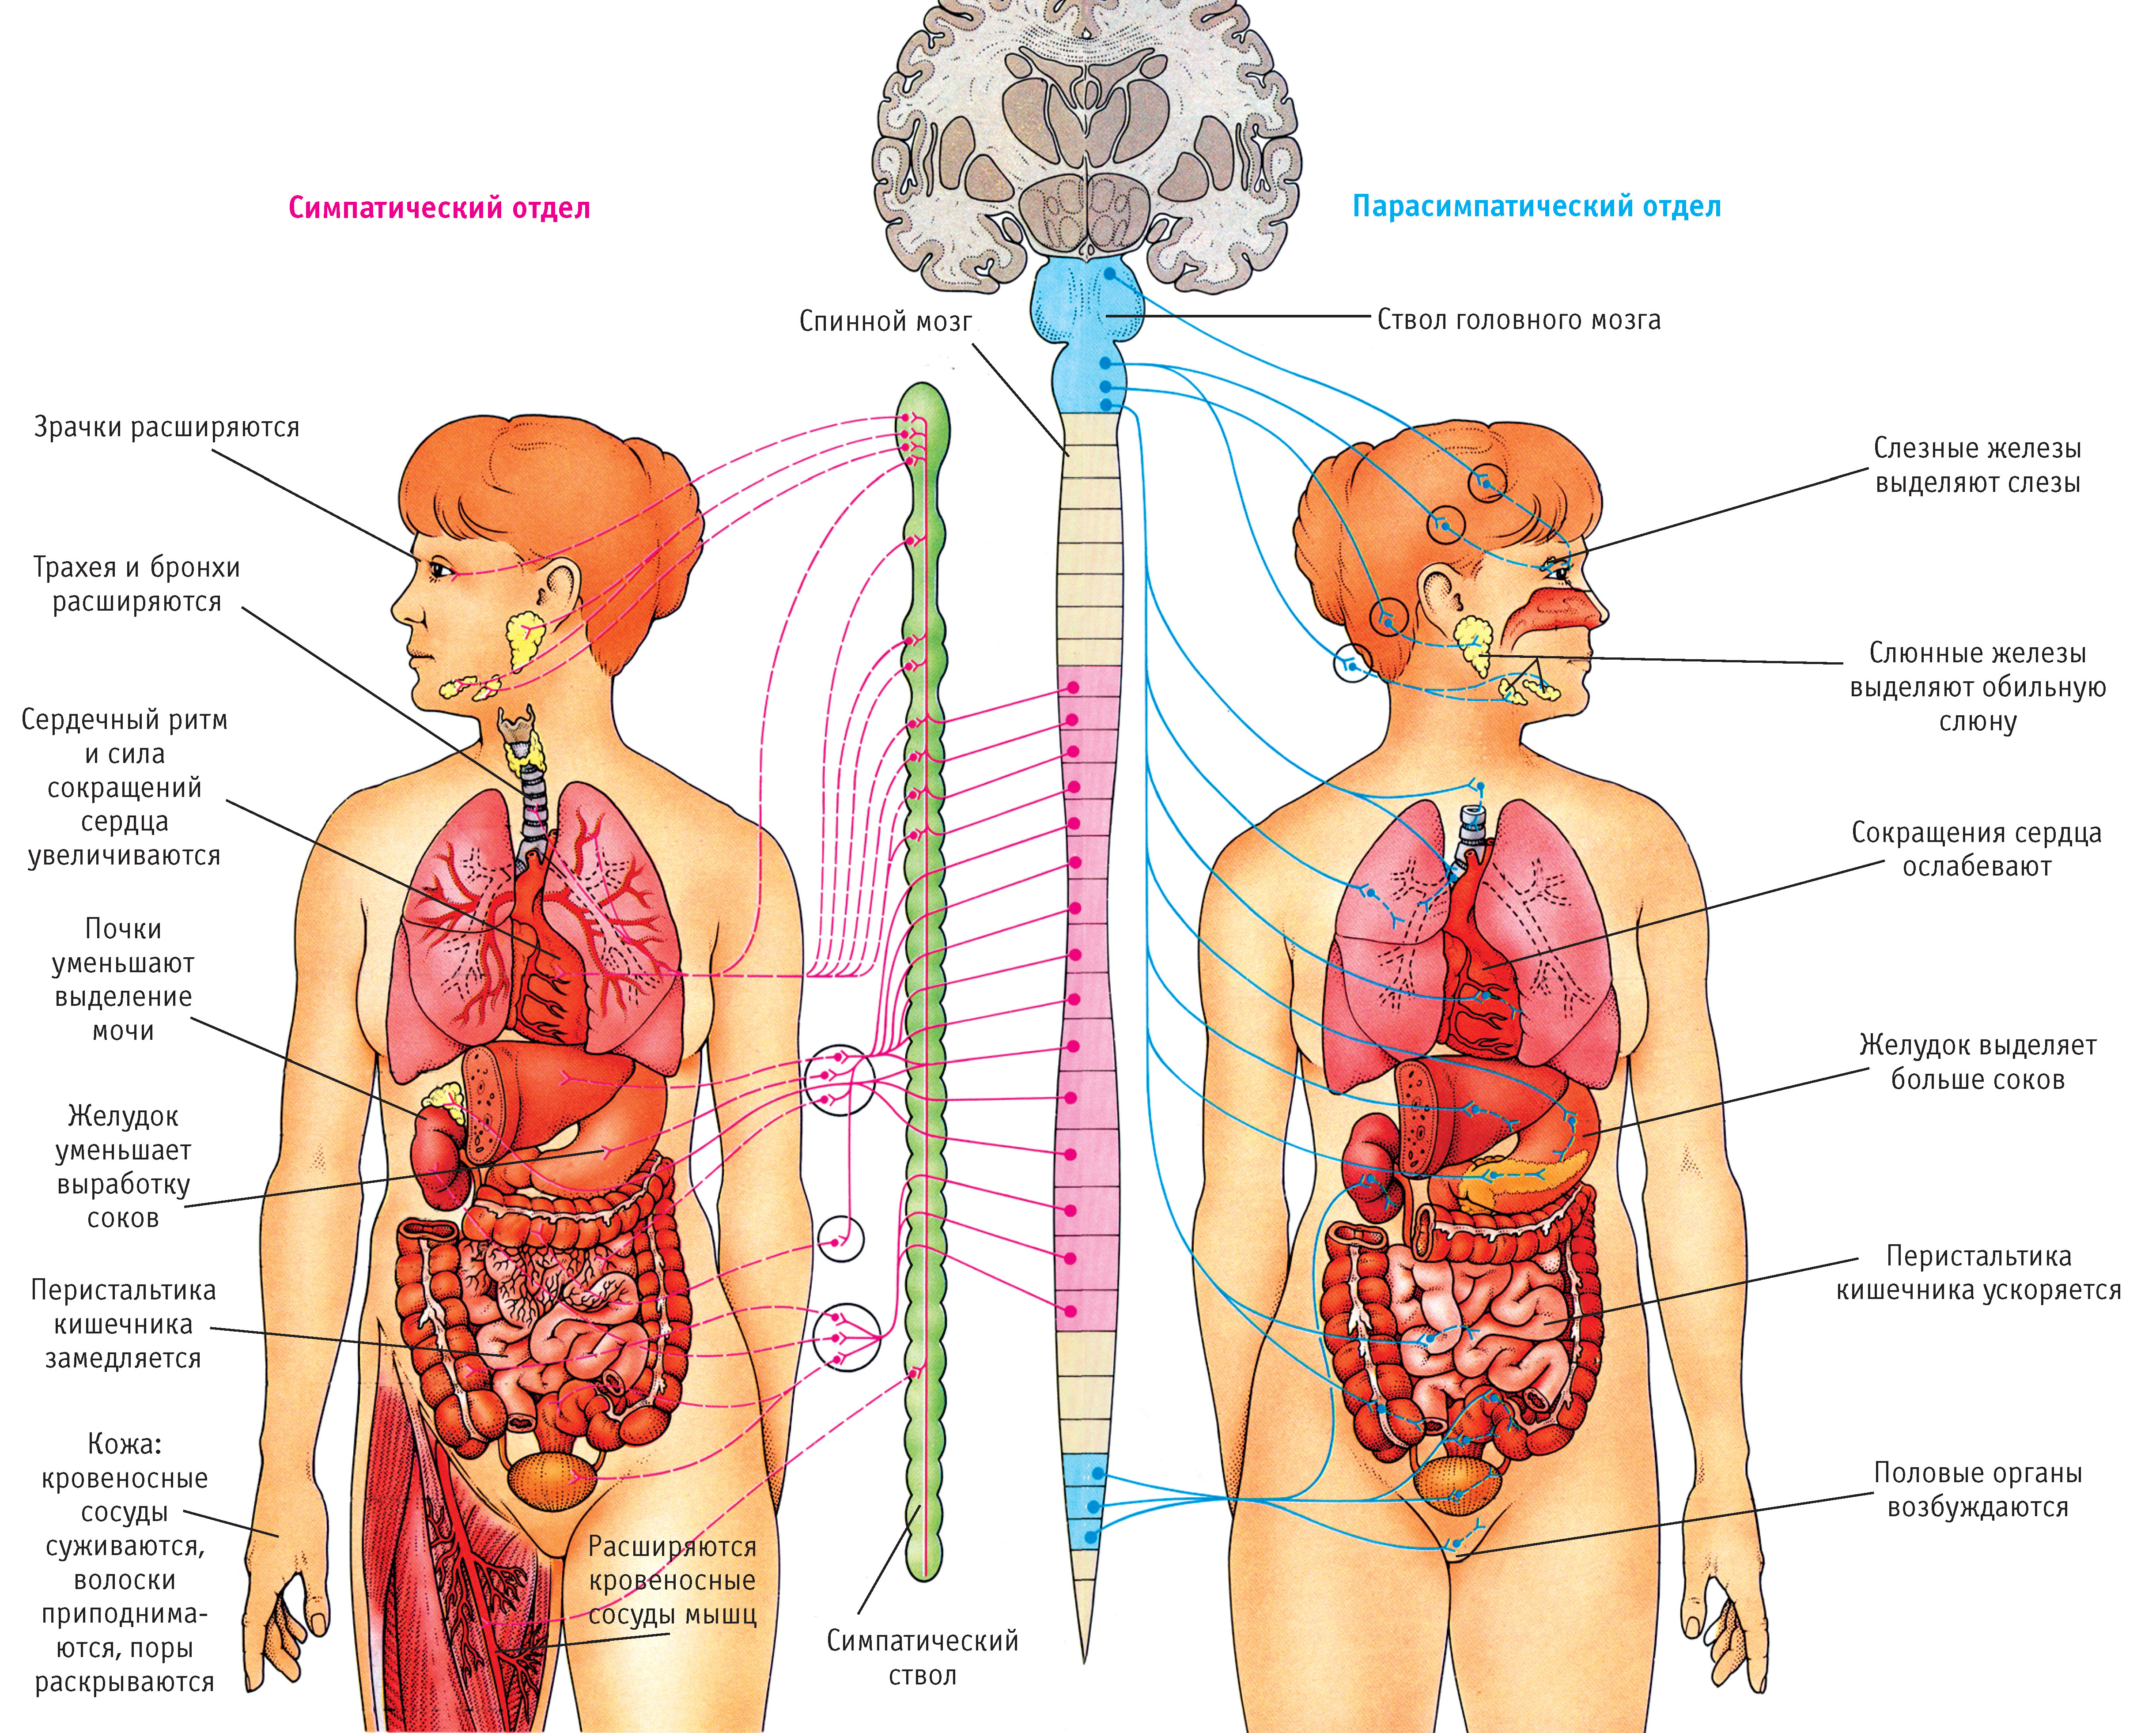 Que es la cetosis en el cuerpo humano